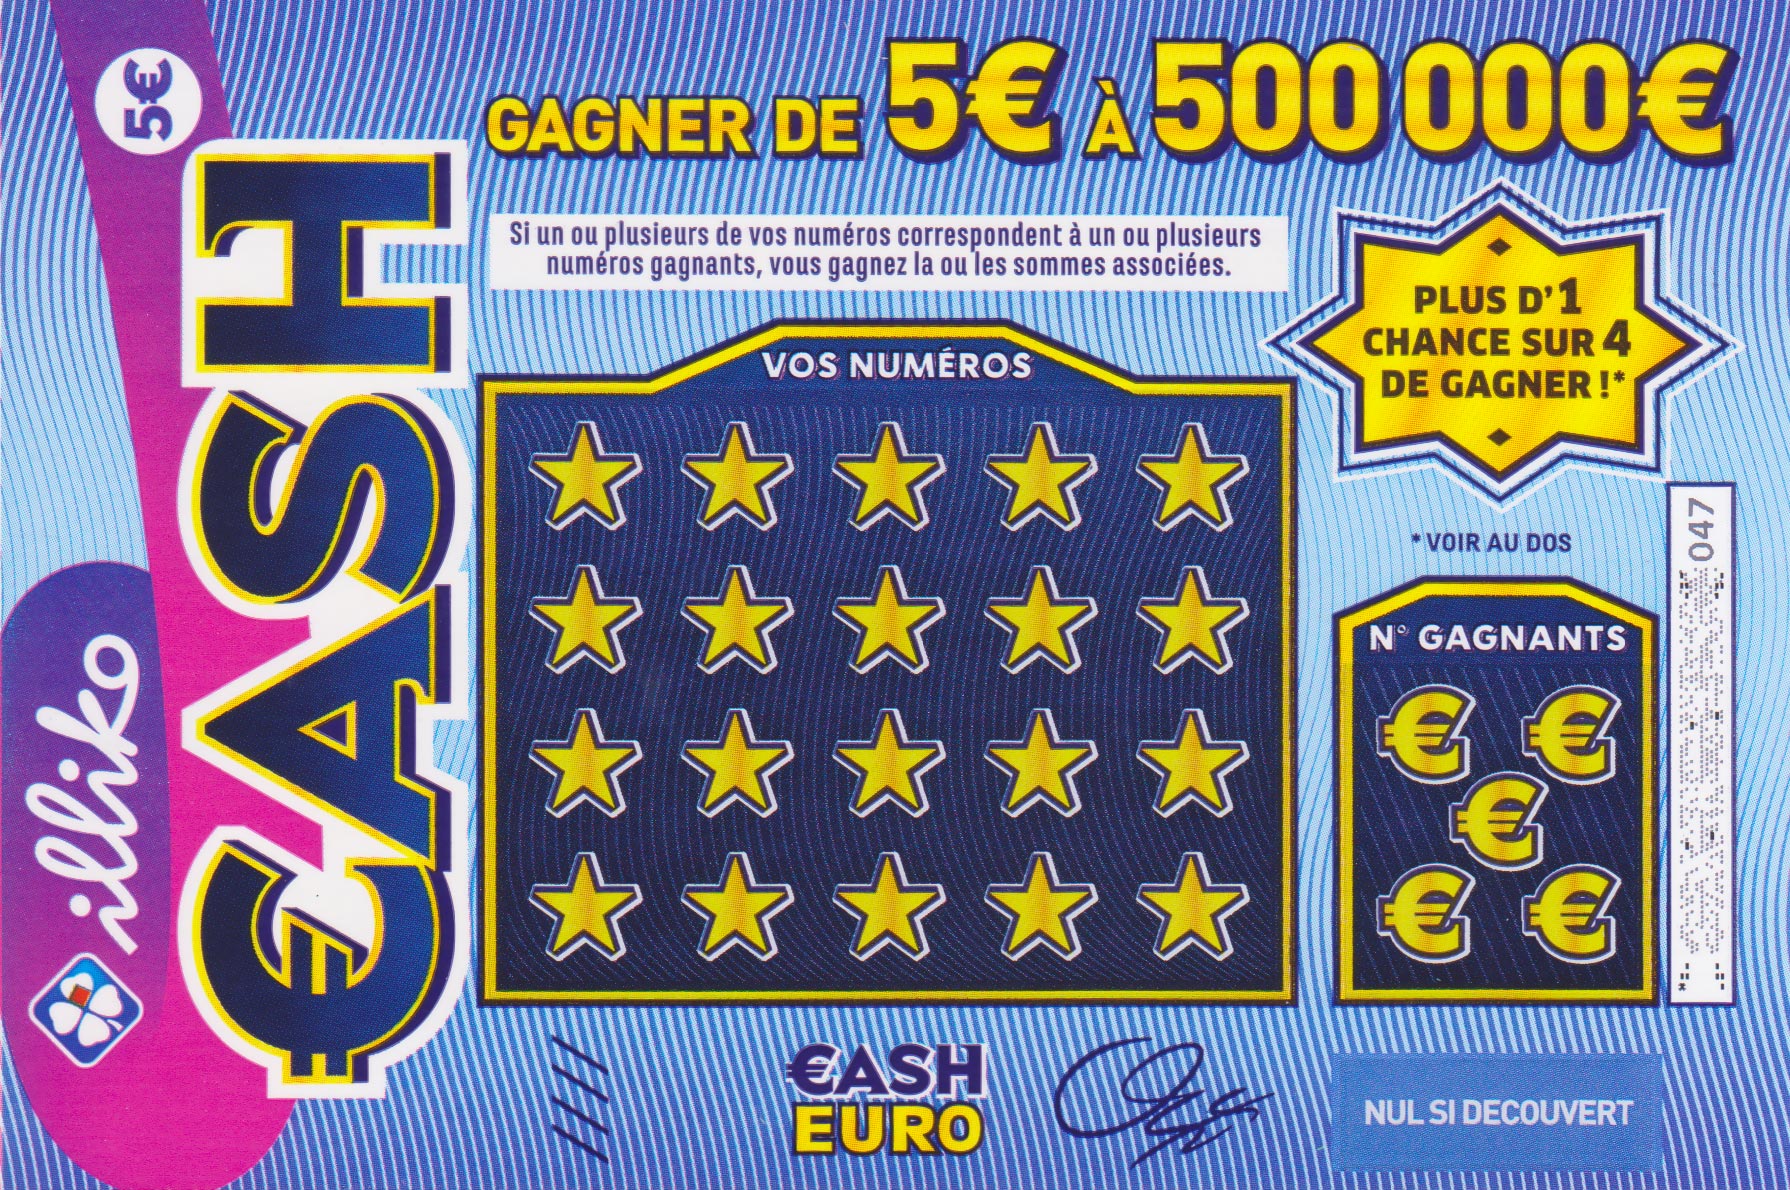 X10 : Misez 2€ et Gagnez jusqu'à 20 000€, jeu à gratter illiko®